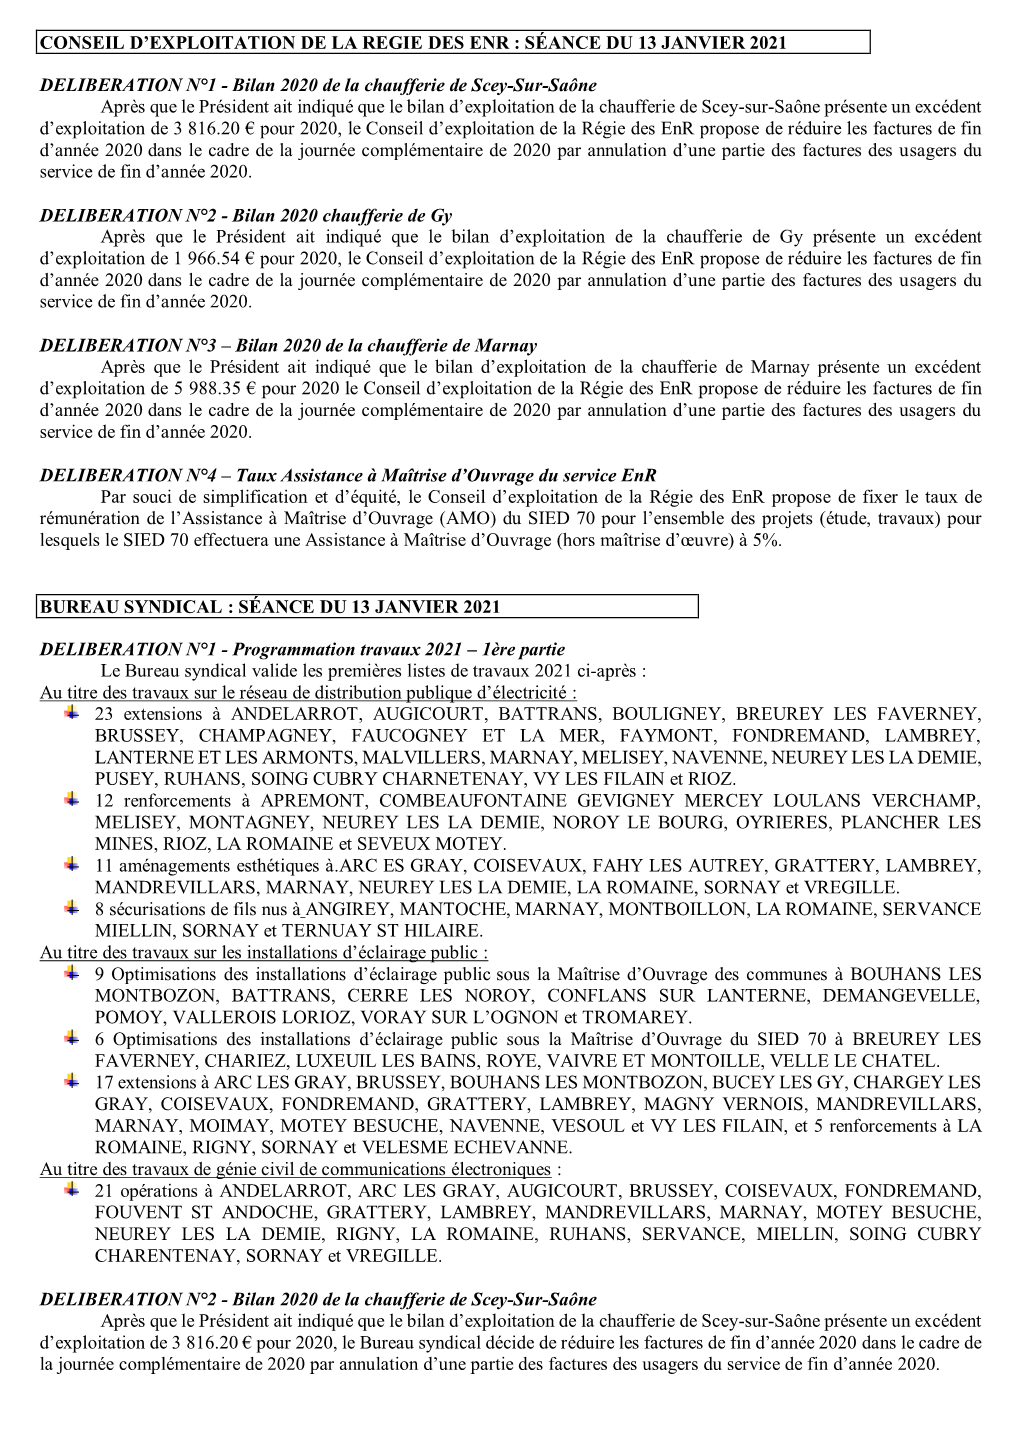 Délibérations Du Bureau Syndical Du 13 Janvier 2021